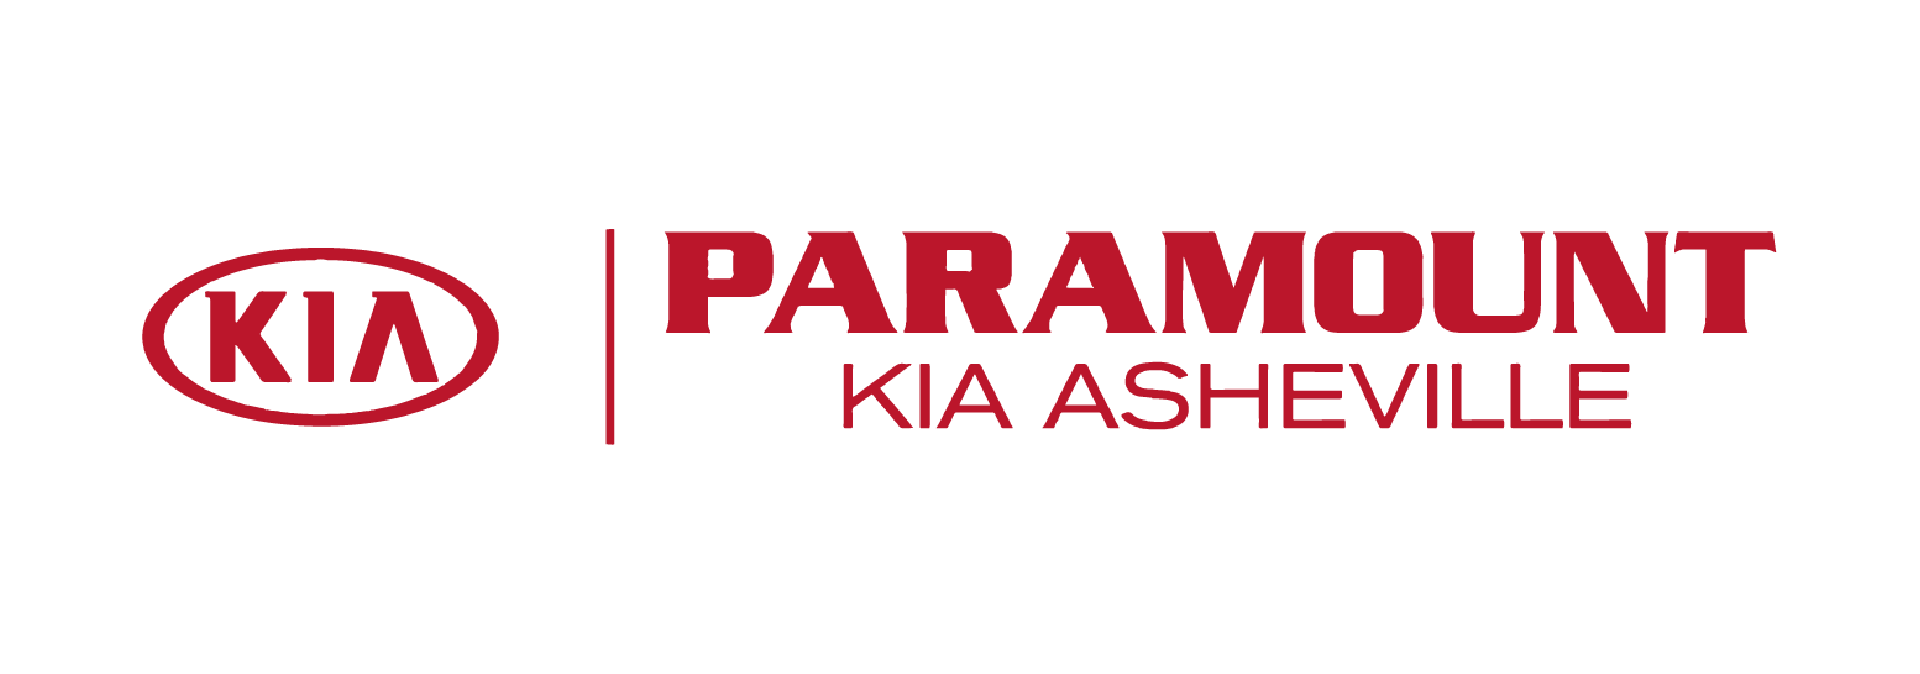 Paramount Kia